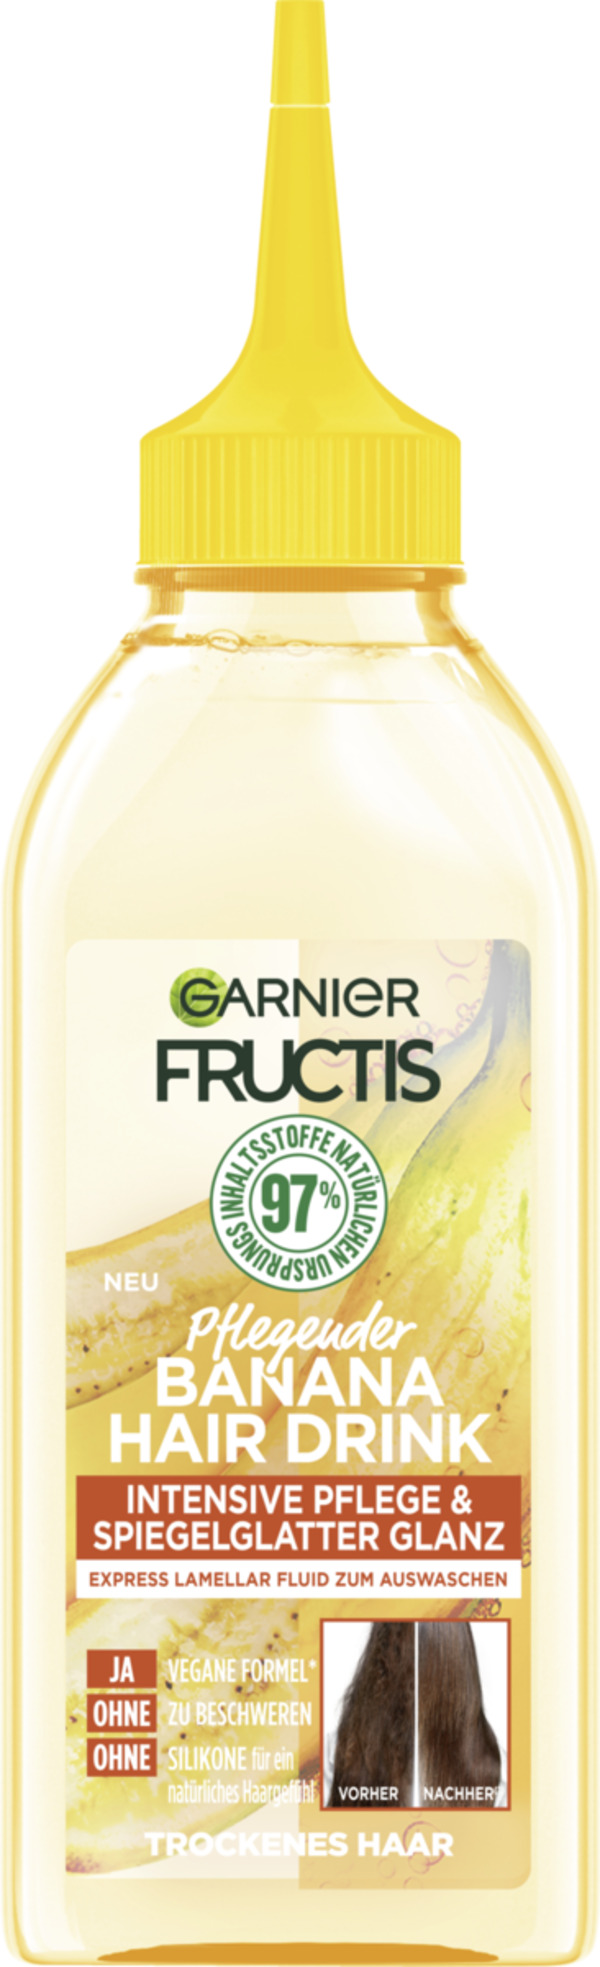 Bild 1 von Garnier Fructis Pflegender Banana Hair Drink